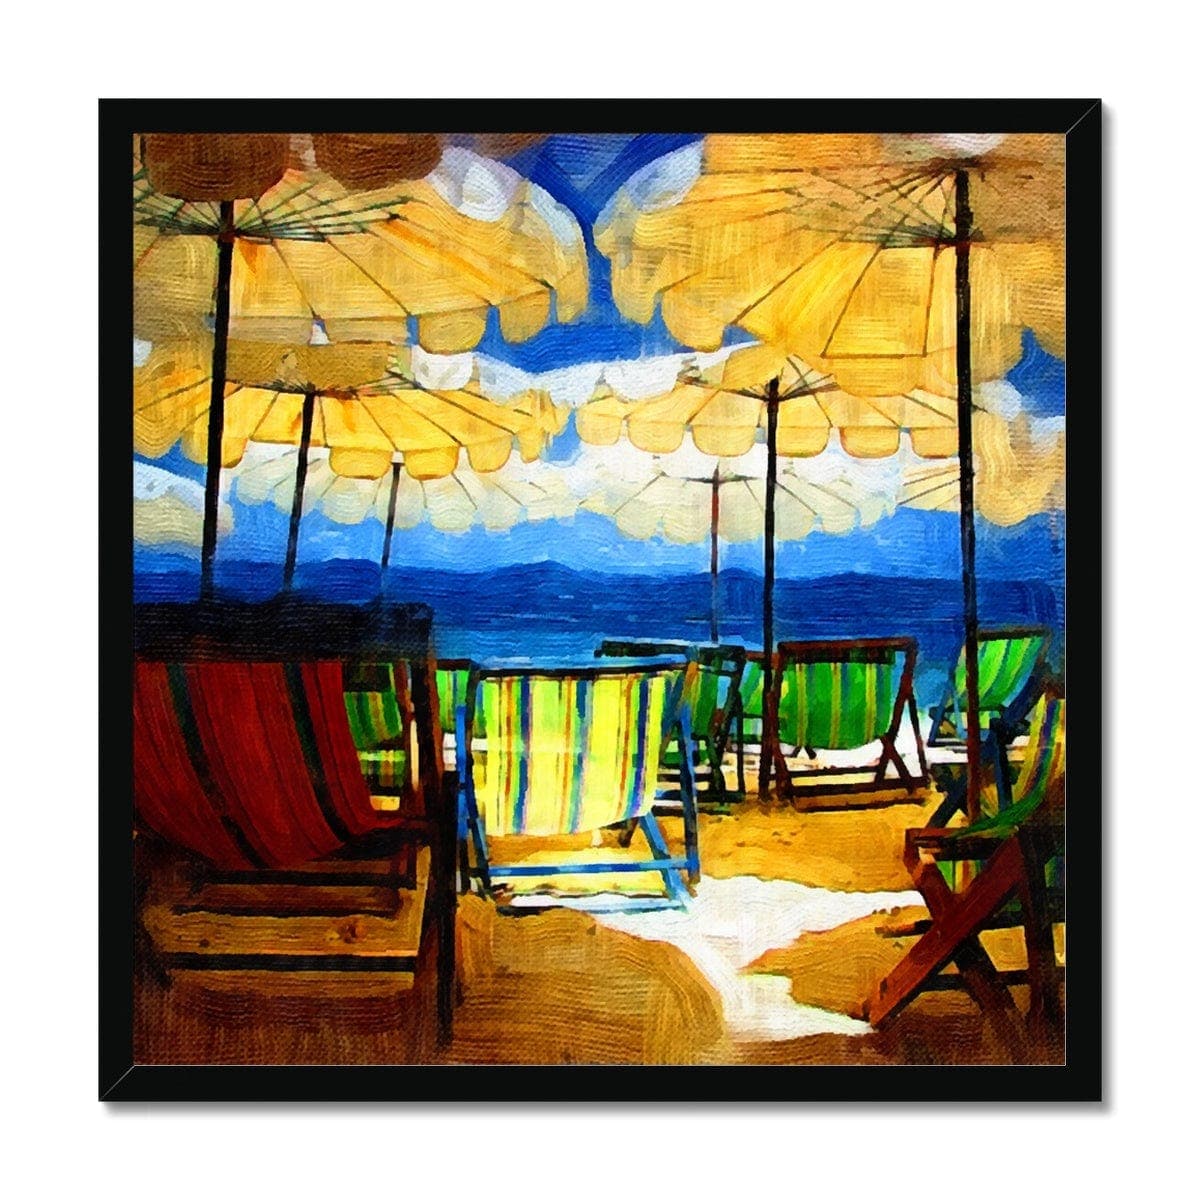 Sunny Day on the Beach Framed Print